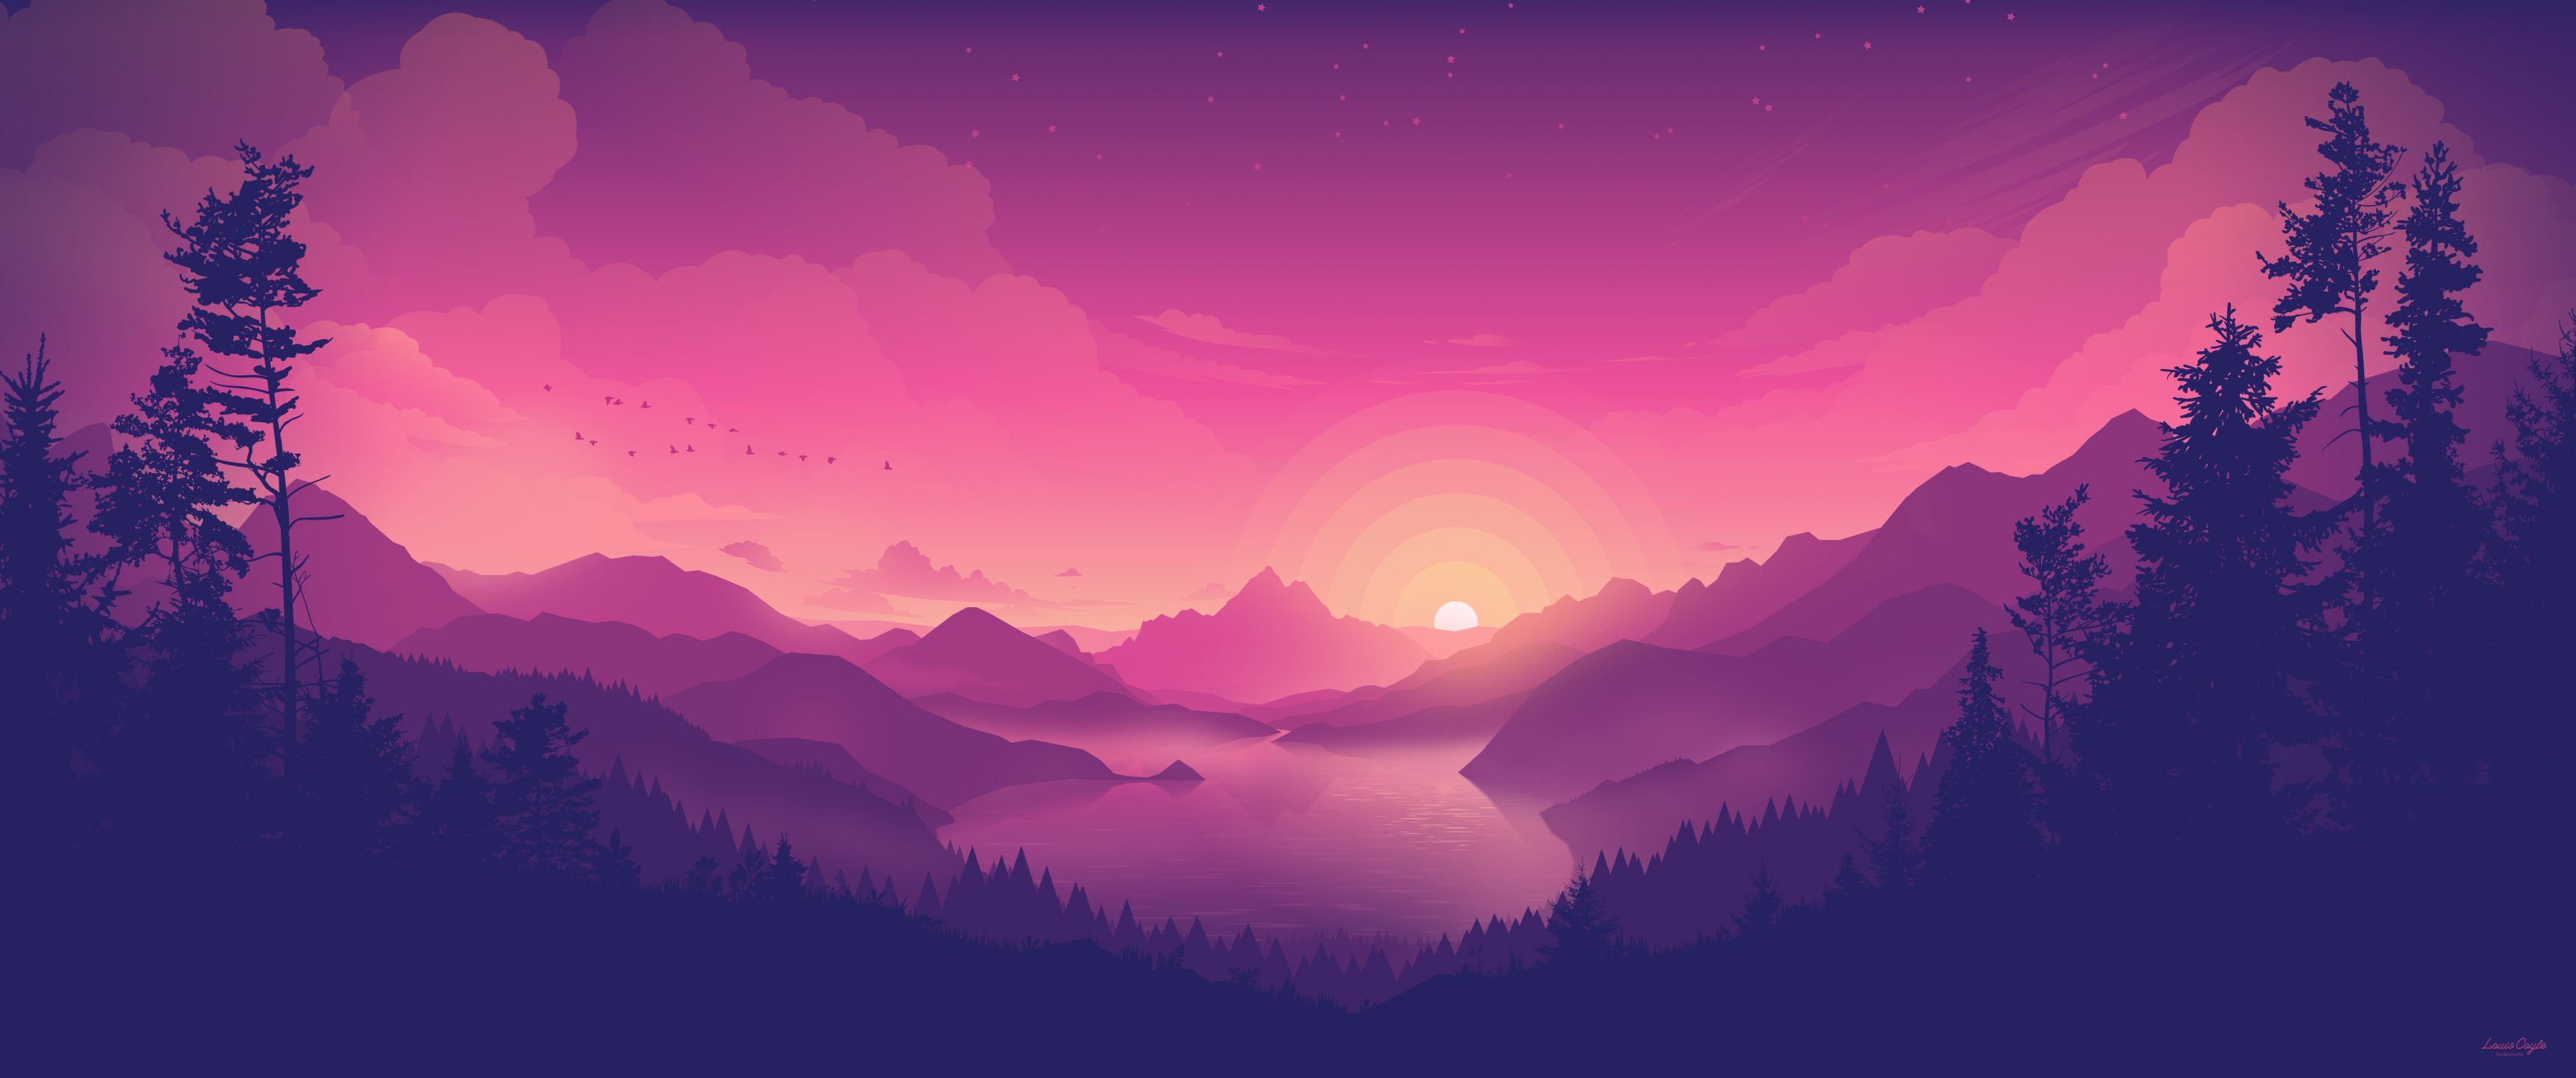 Lakeside Wallpaper 4K, Aesthetic, Pink sky, Sunset